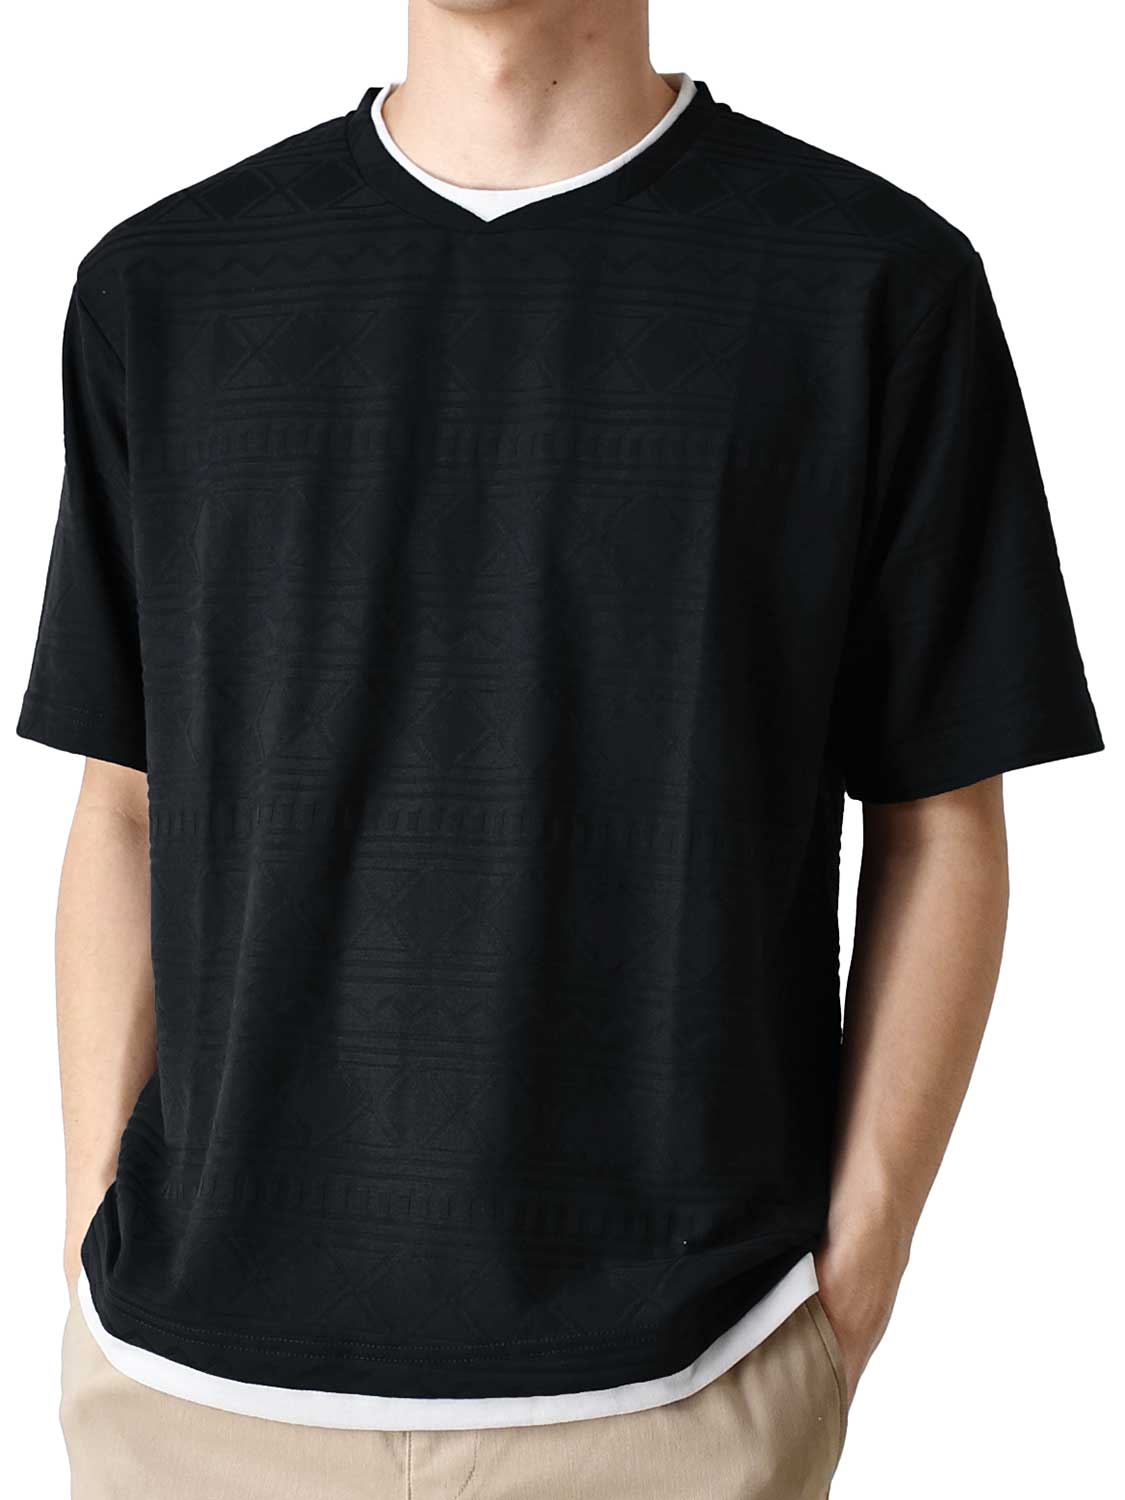 カットソー Tシャツ メンズ 総柄 ストレッチ 重ね着風 半袖 送料無料 通販Y